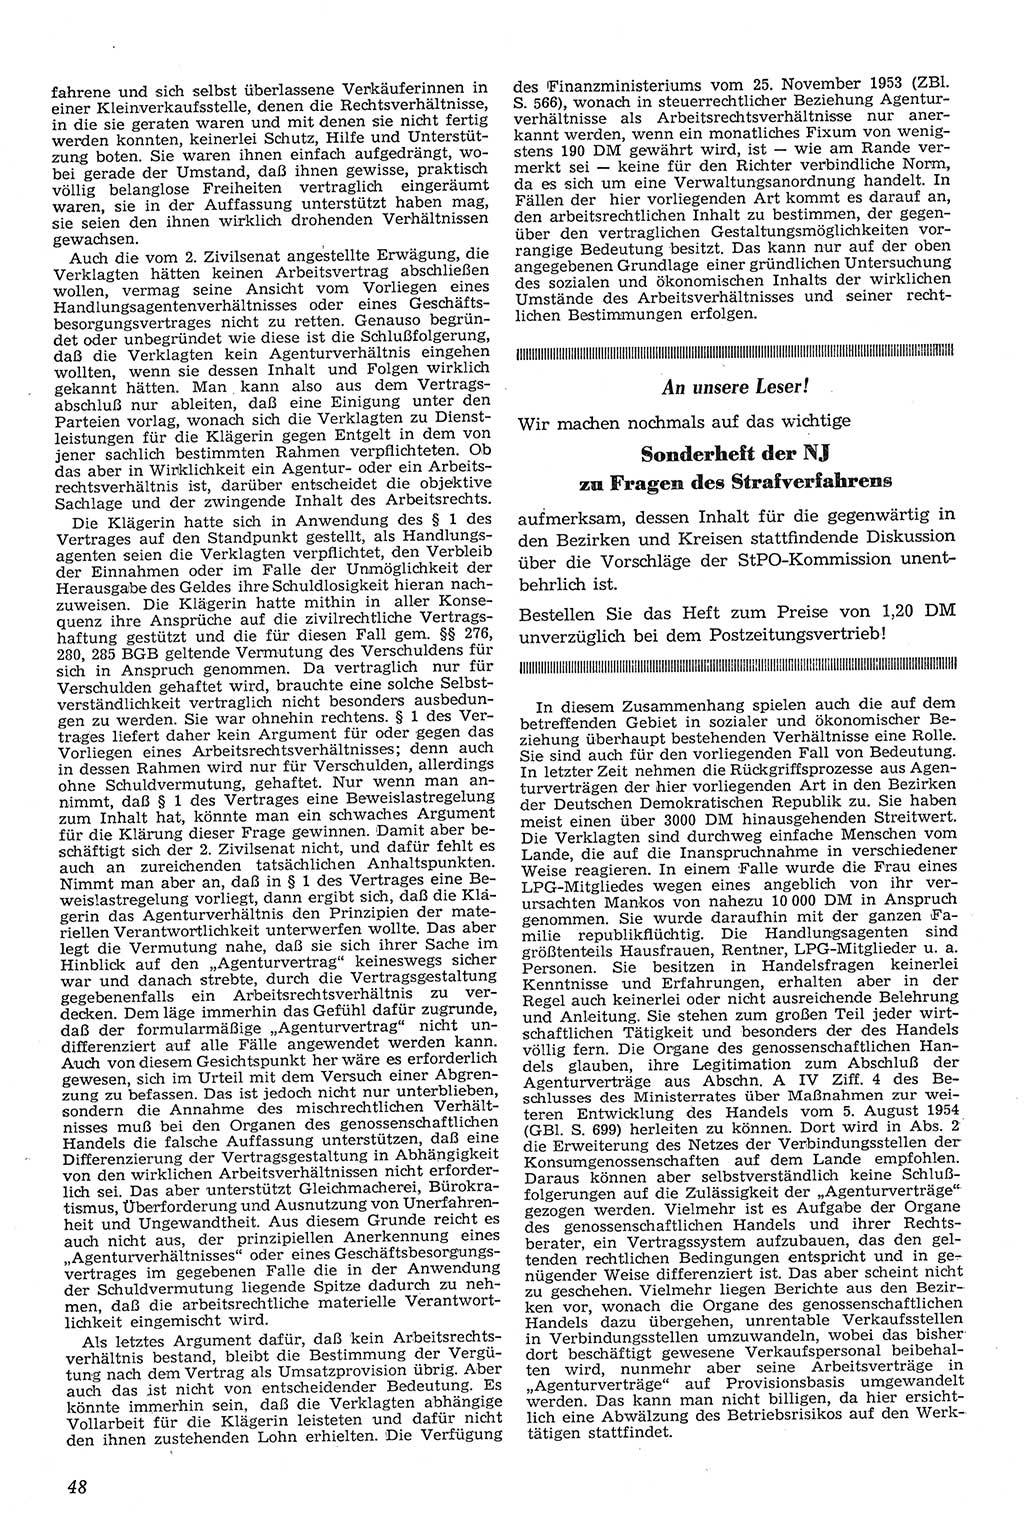 Neue Justiz (NJ), Zeitschrift für Recht und Rechtswissenschaft [Deutsche Demokratische Republik (DDR)], 11. Jahrgang 1957, Seite 48 (NJ DDR 1957, S. 48)